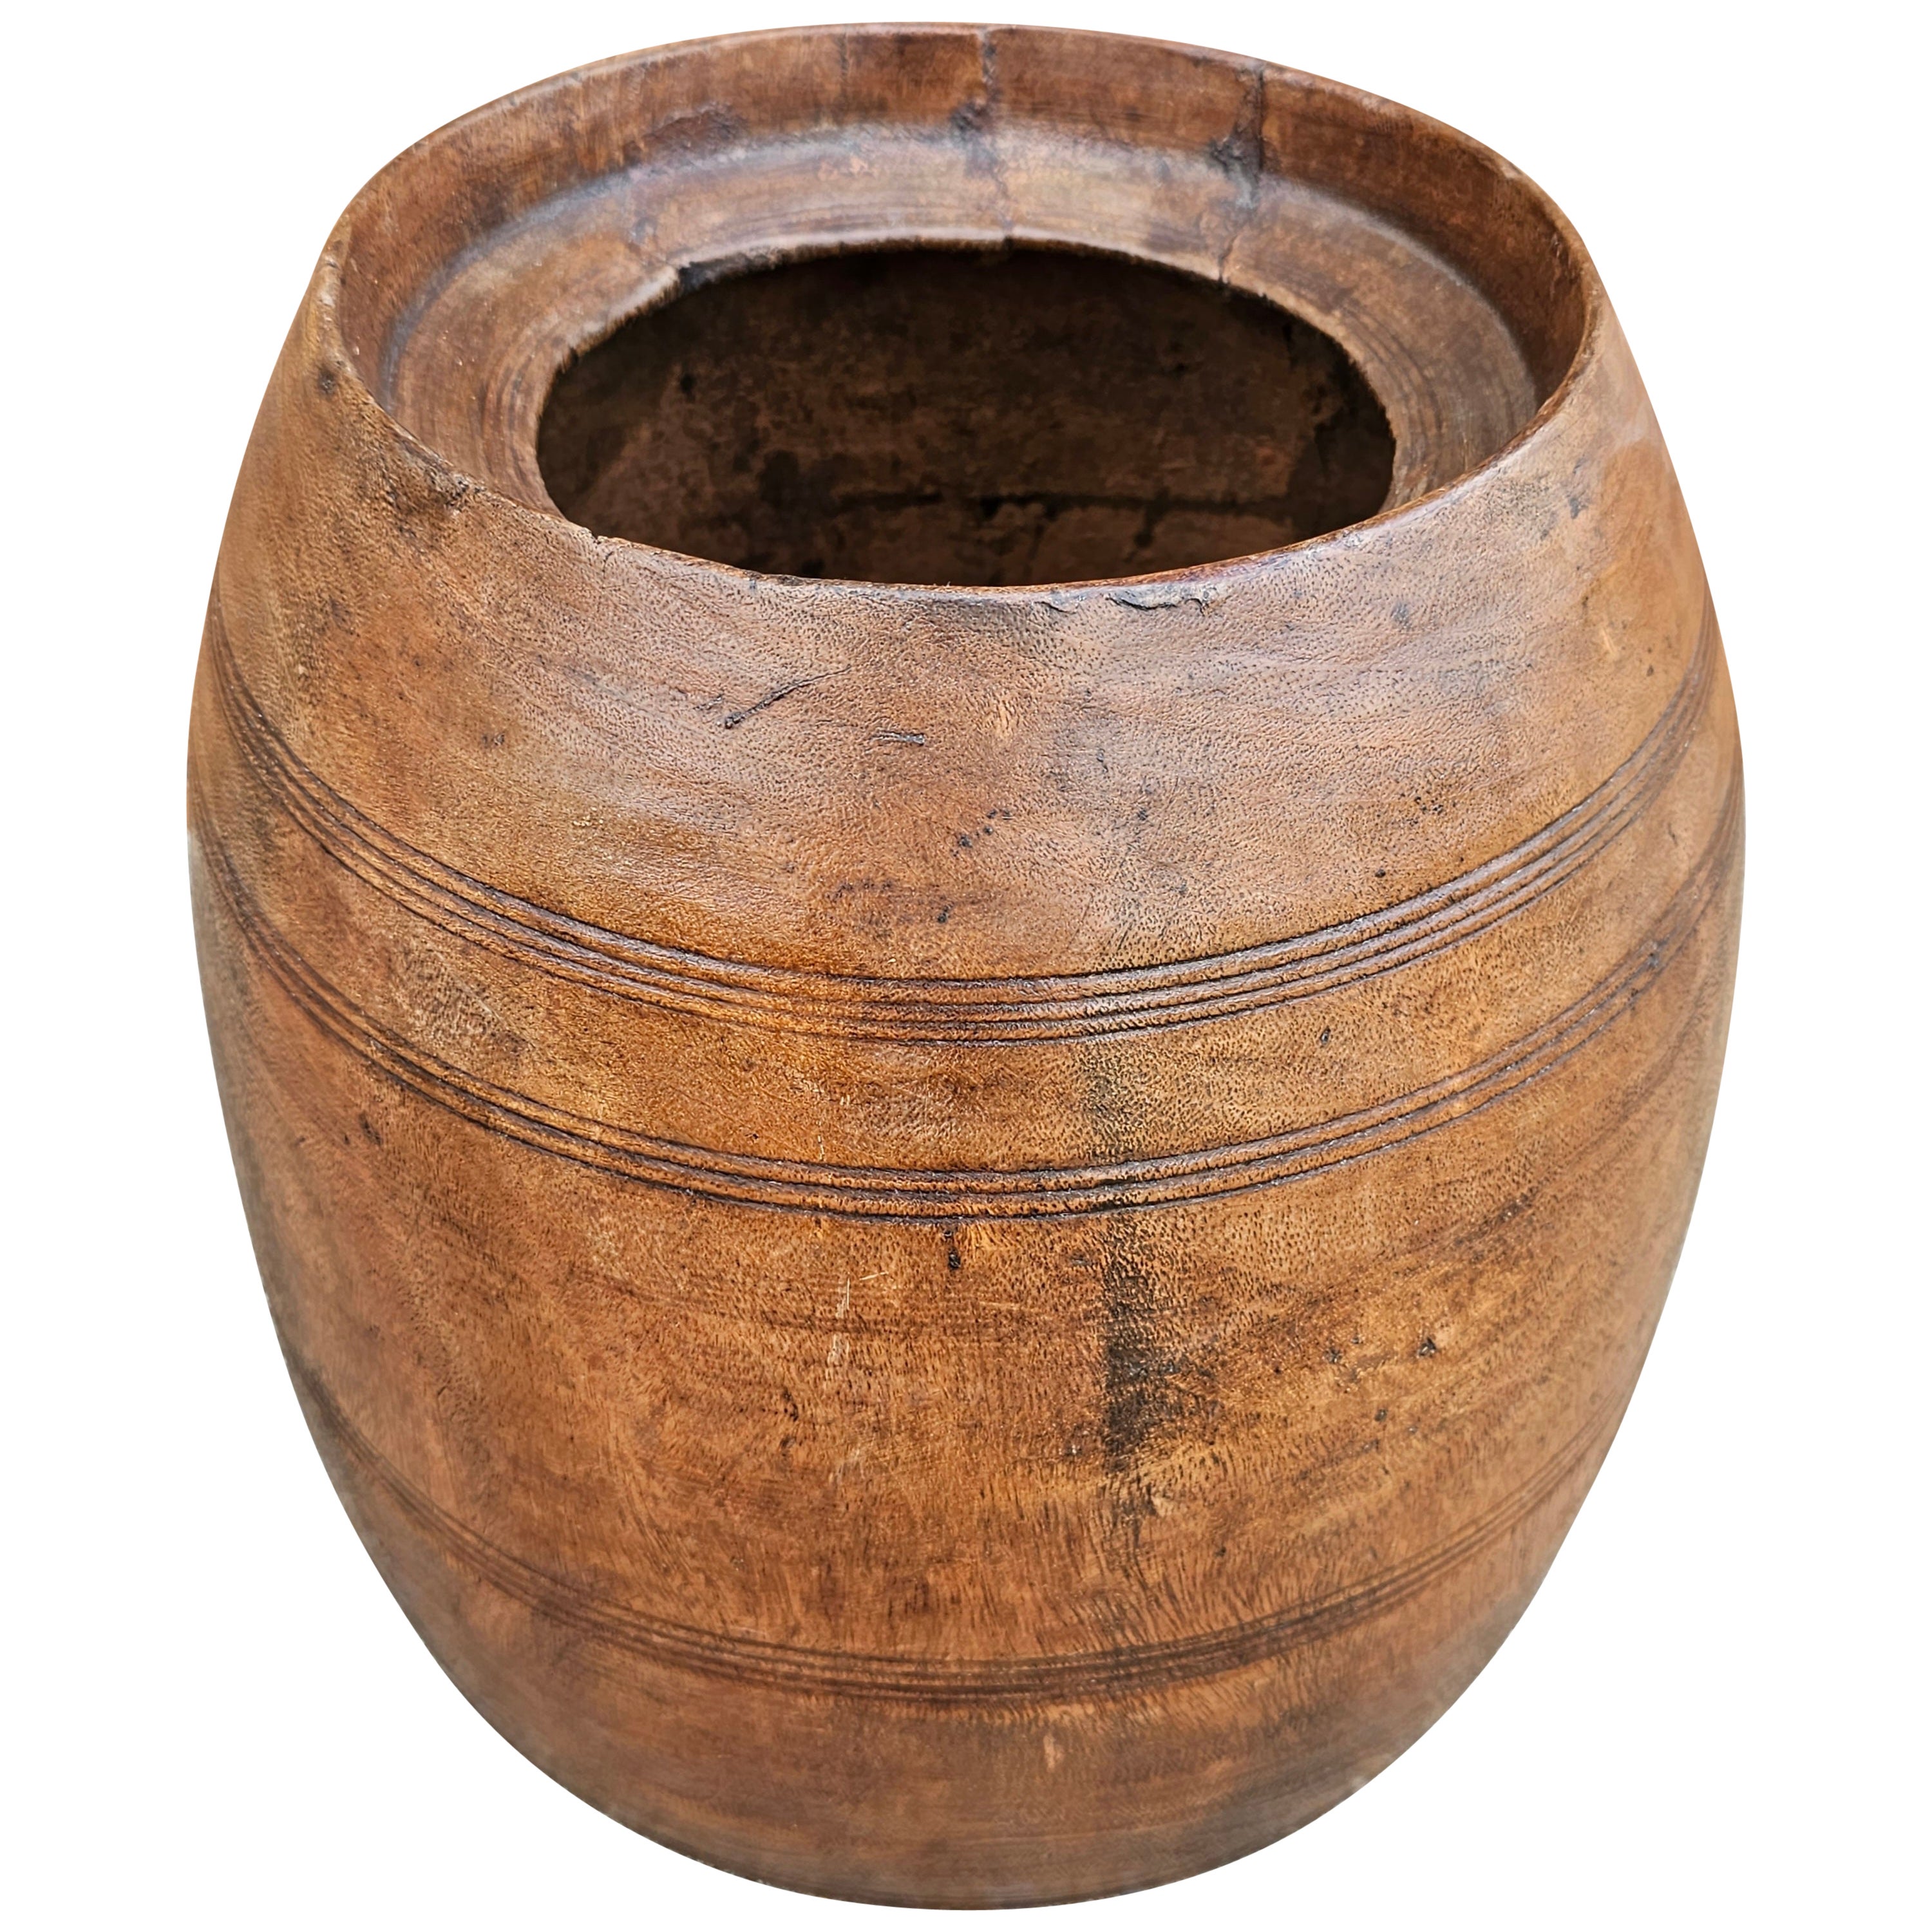 Pot à miel / pot à riz en bois tourné, aujourd'hui jardinière, du début du 20e siècle, fait à la main en vente